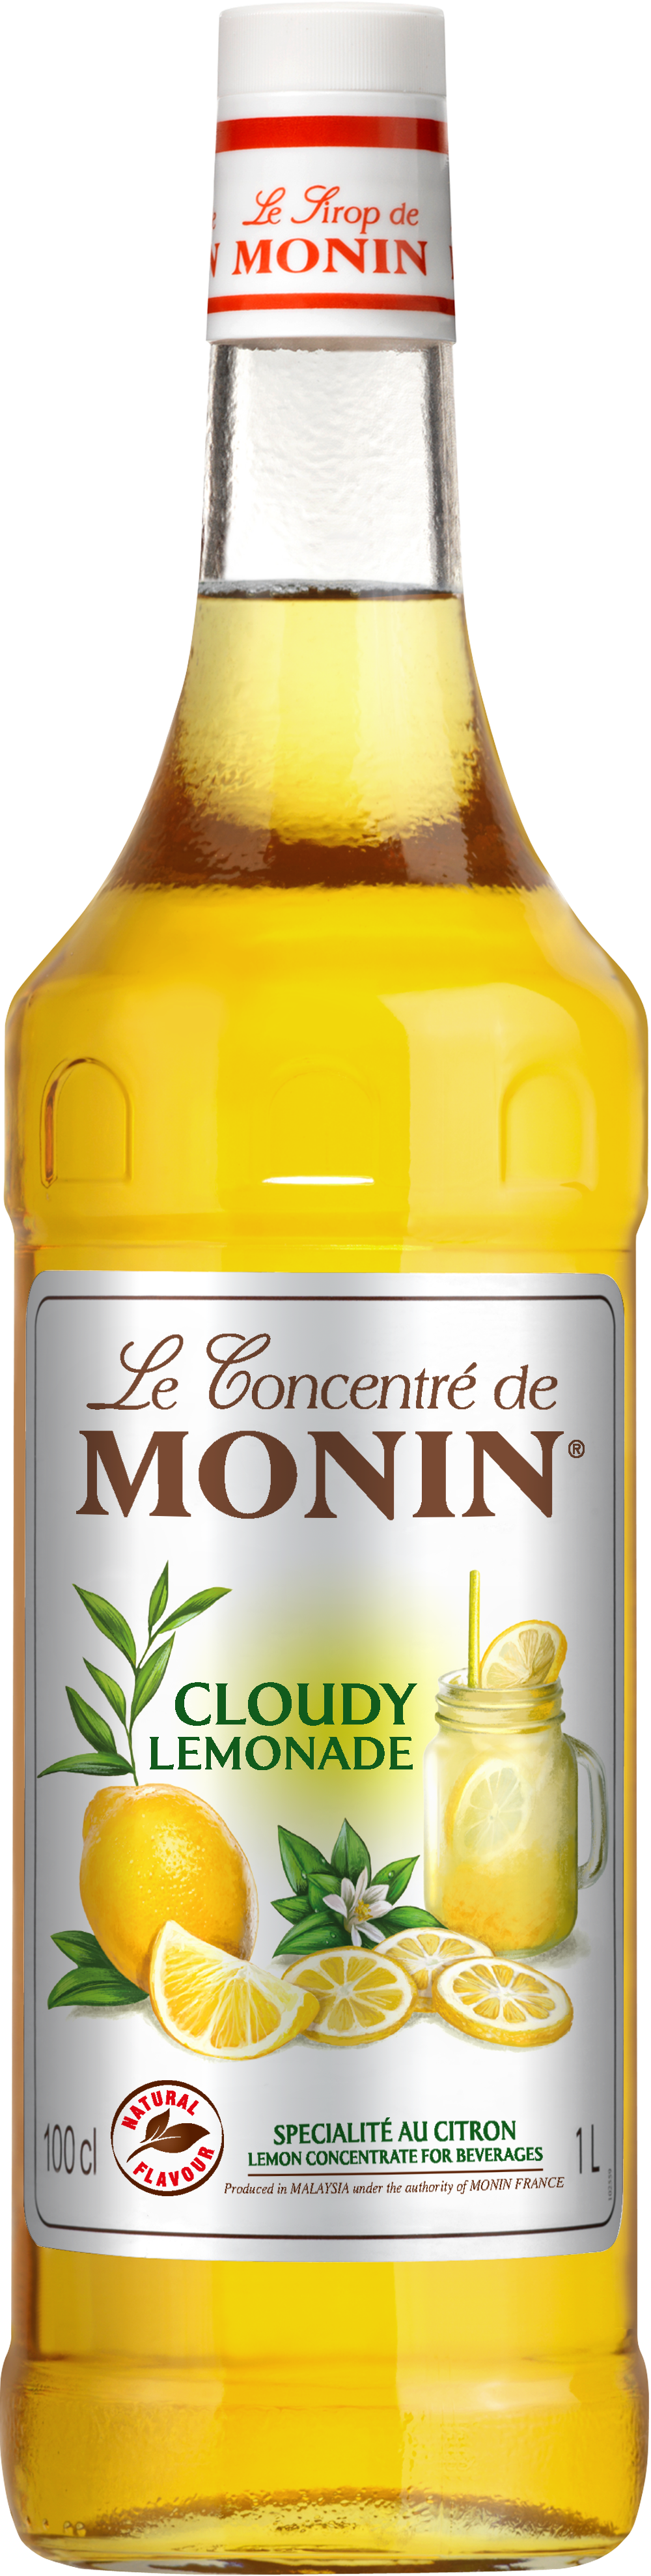 Le Concentré de MONIN Cloudy Lemonade